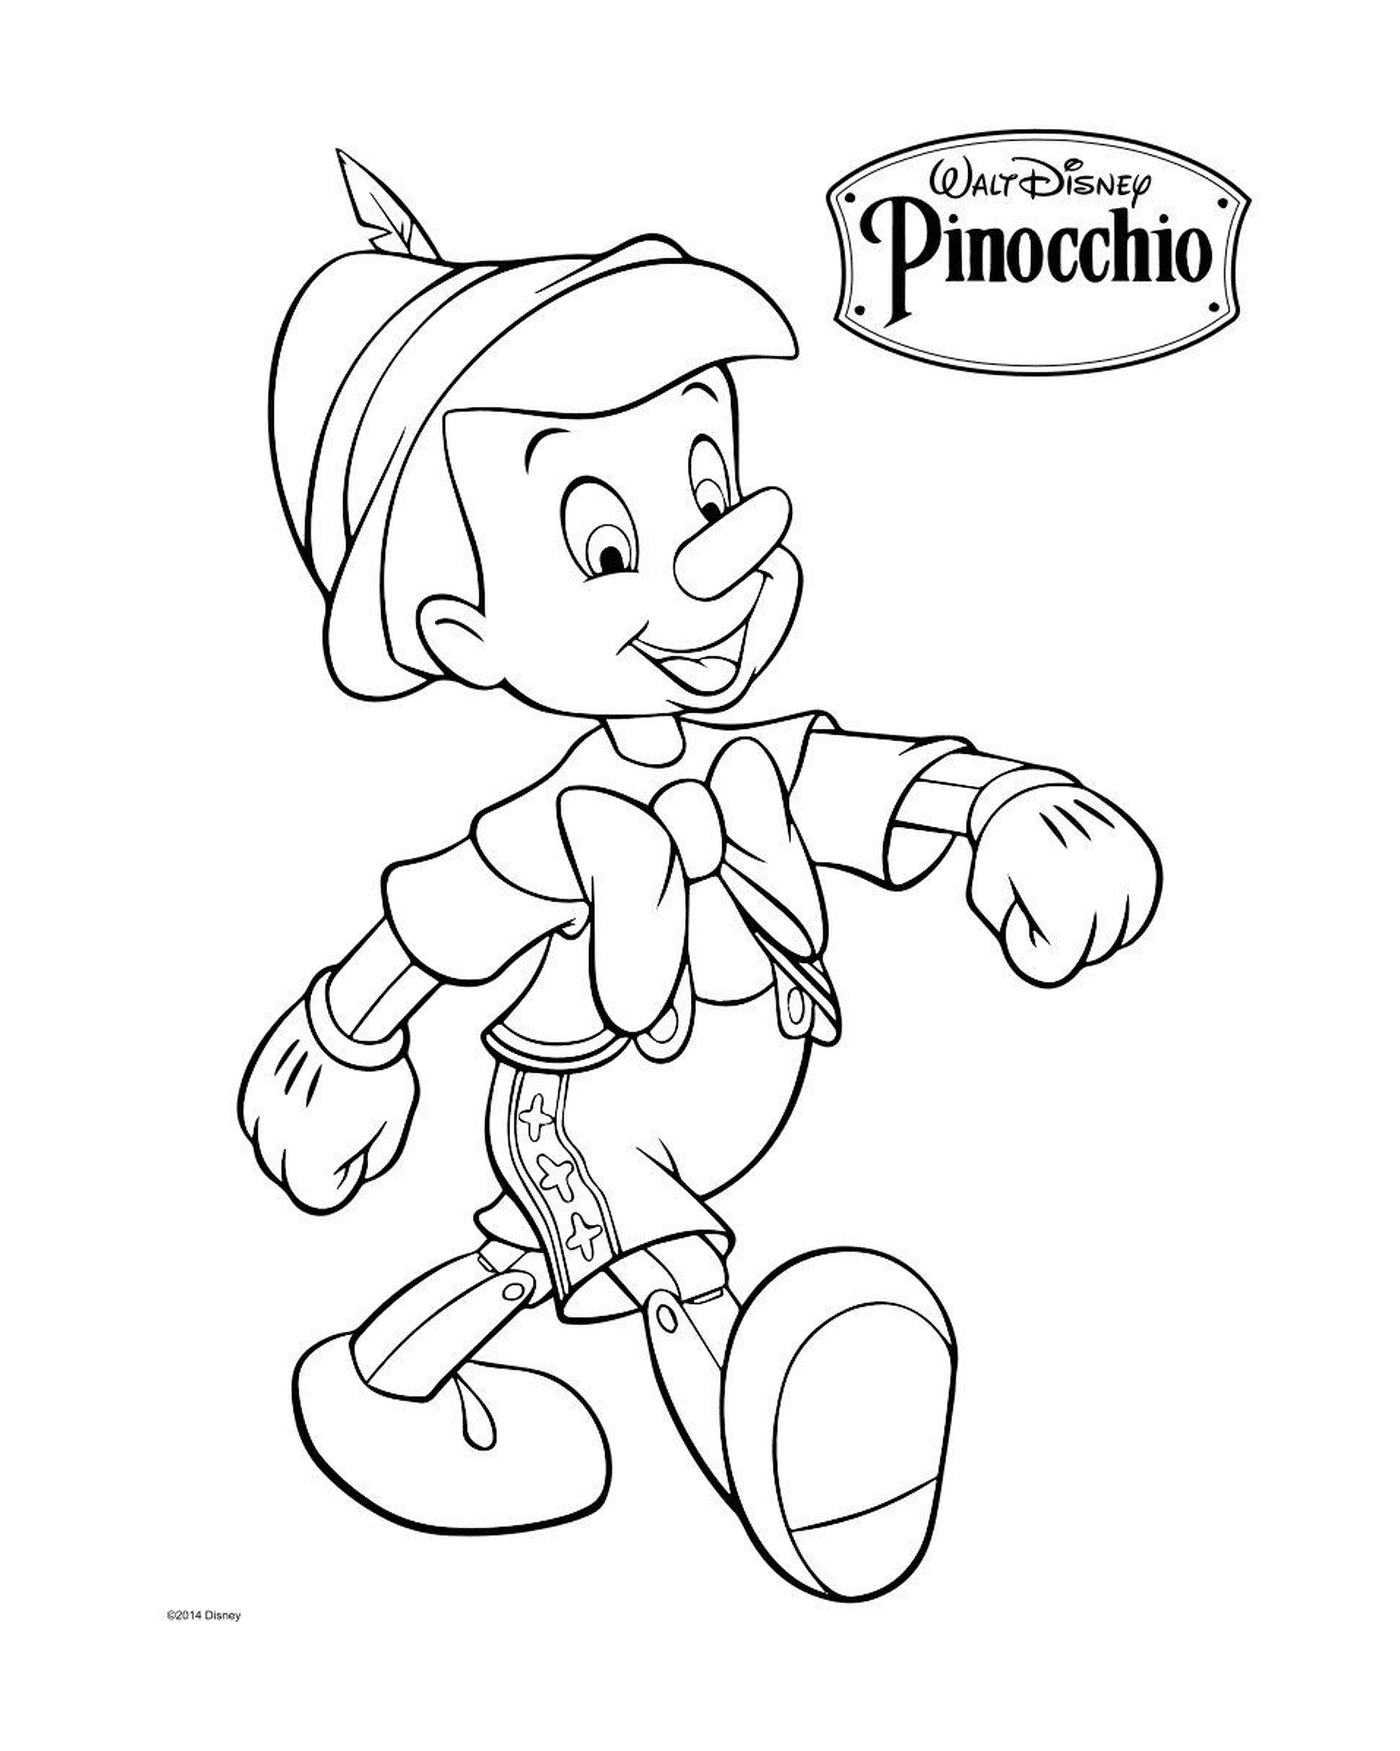  Geppetto, ein italienischer Zimmermann, fertigt eine Pinocchio-Puppe 